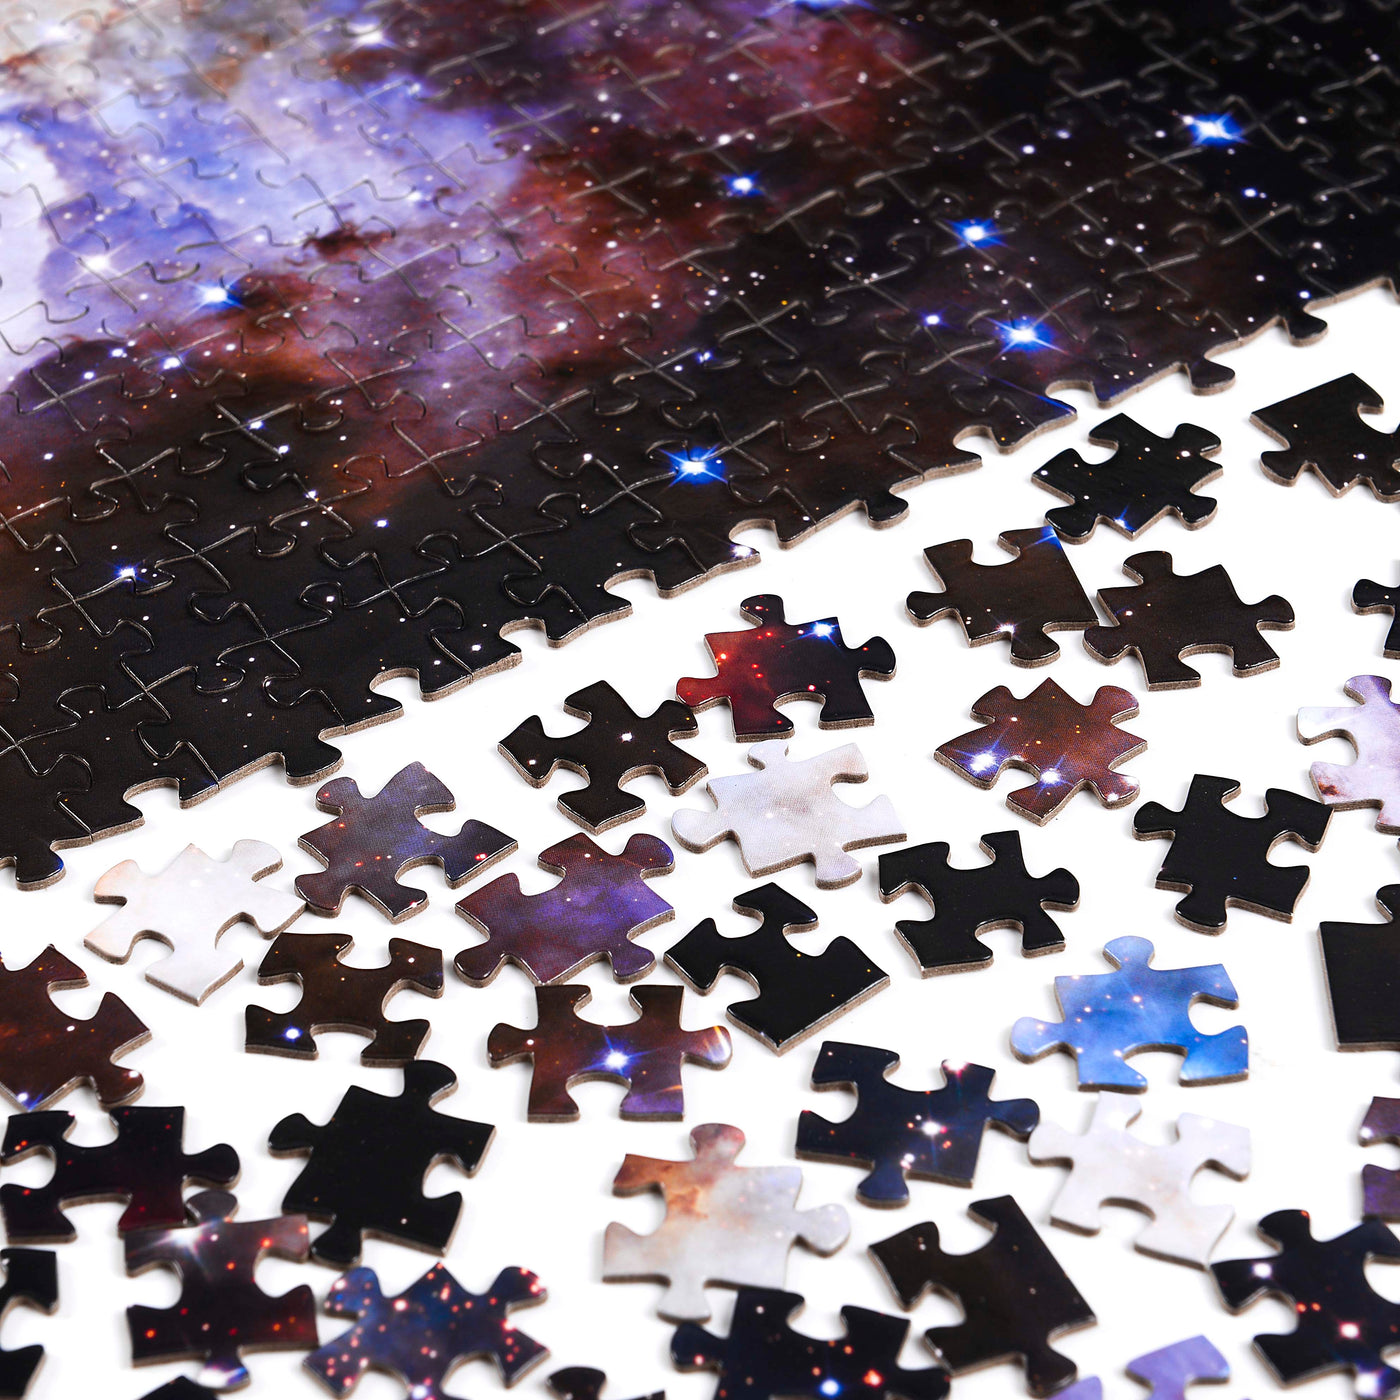 NEBULA | 1,000 Piece Jigsaw Puzzle